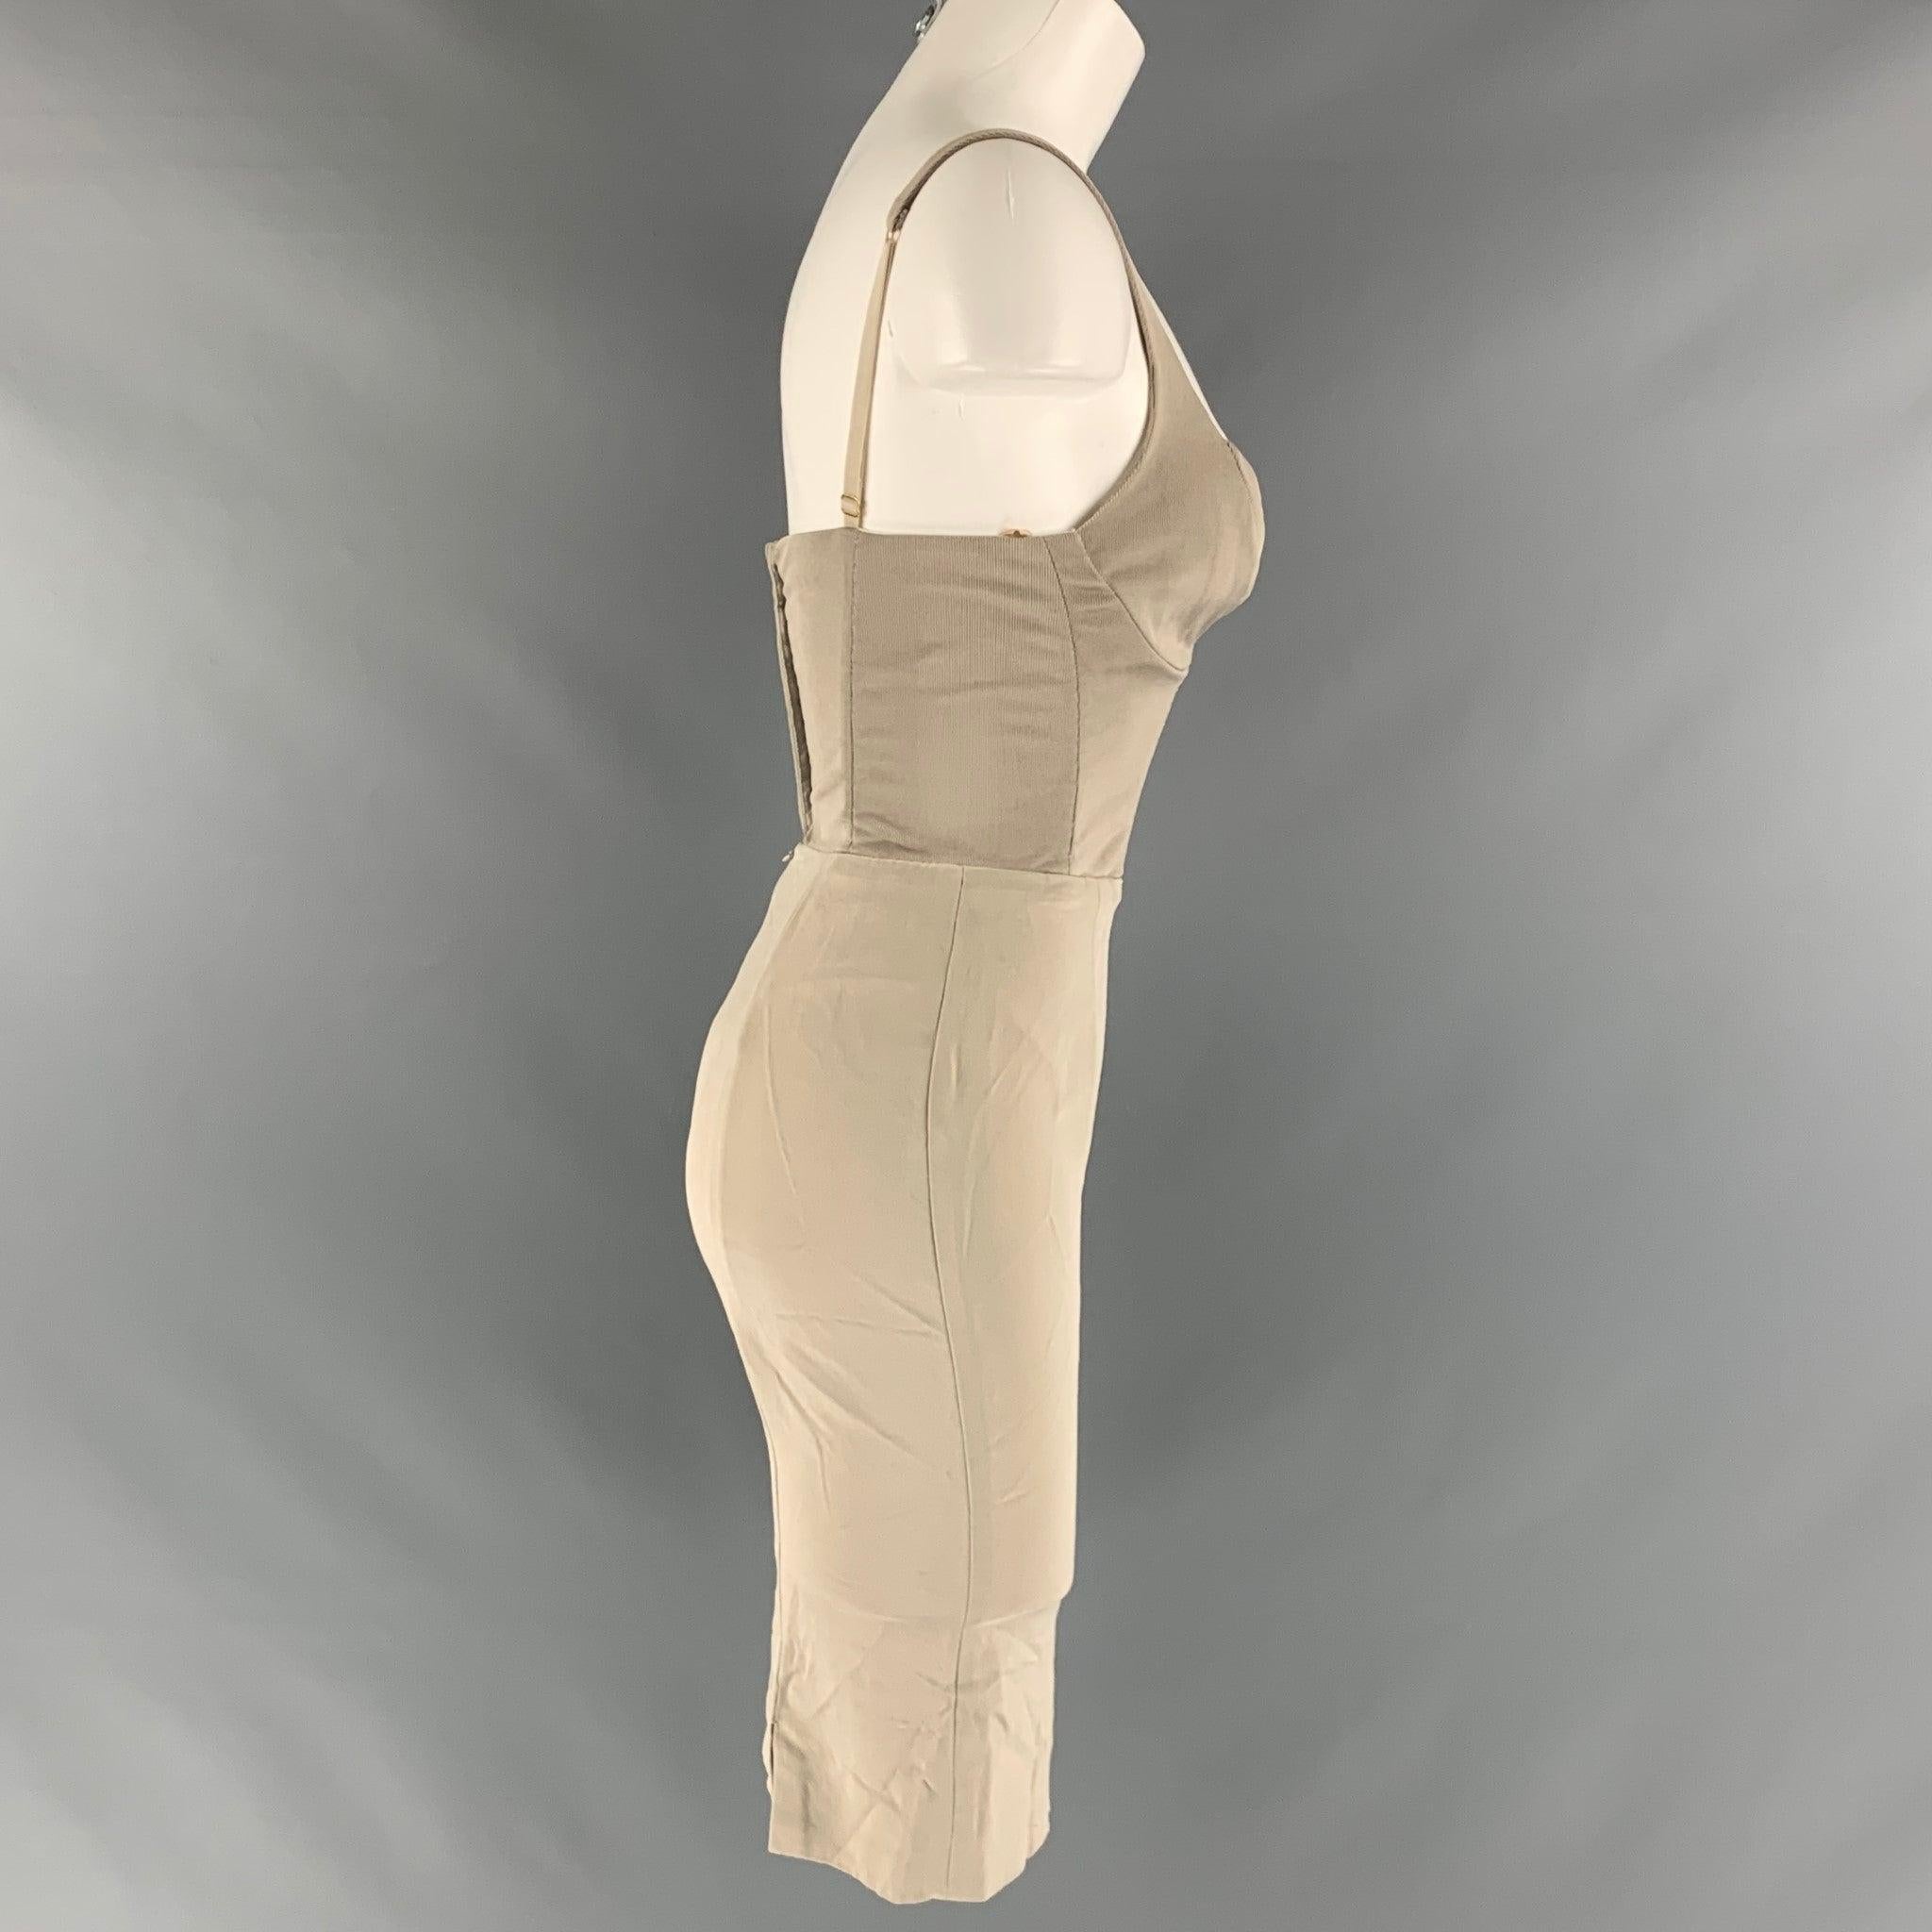 La robe bustier VINTAGE de DONNA KARAN est réalisée en maille viscose grise et se compose d'un haut bustier à bretelles spaghetti, d'une jupe moulante, d'une capuche et d'œillets avec fermeture à glissière. Fabriqué aux Etats-Unis. Très bon état.